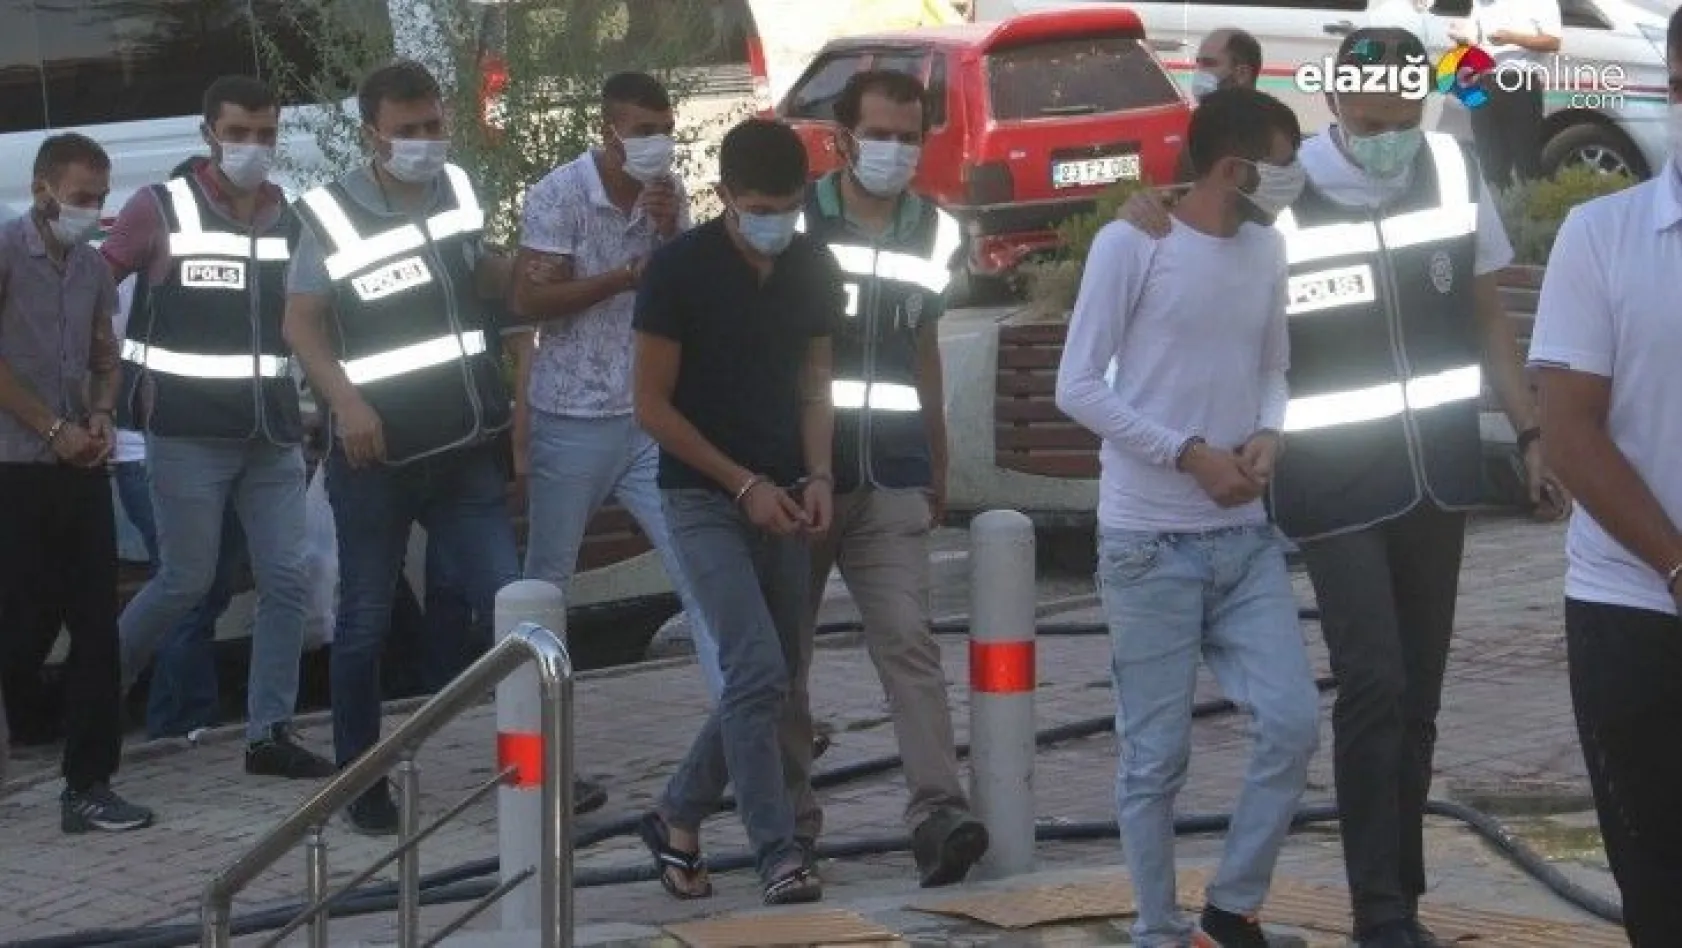 Elazığ'da hırsızlık operasyonları: 6 gözaltı